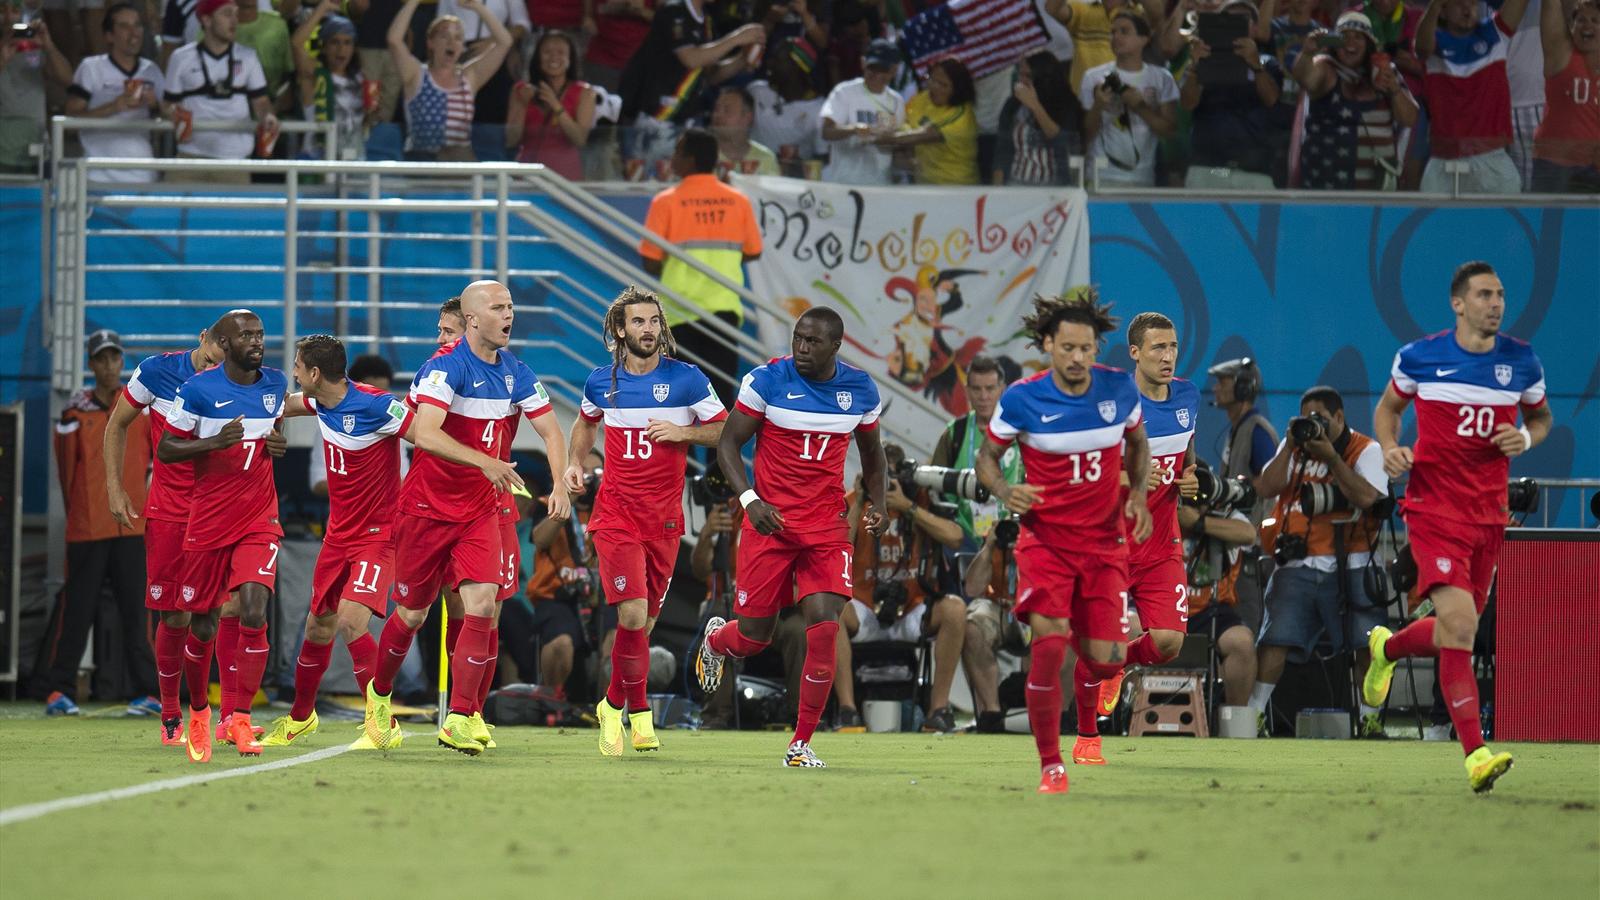 CDM 2014- Ghana-Etats-Unis (1-2): La revanche américaine a bien eu lieu